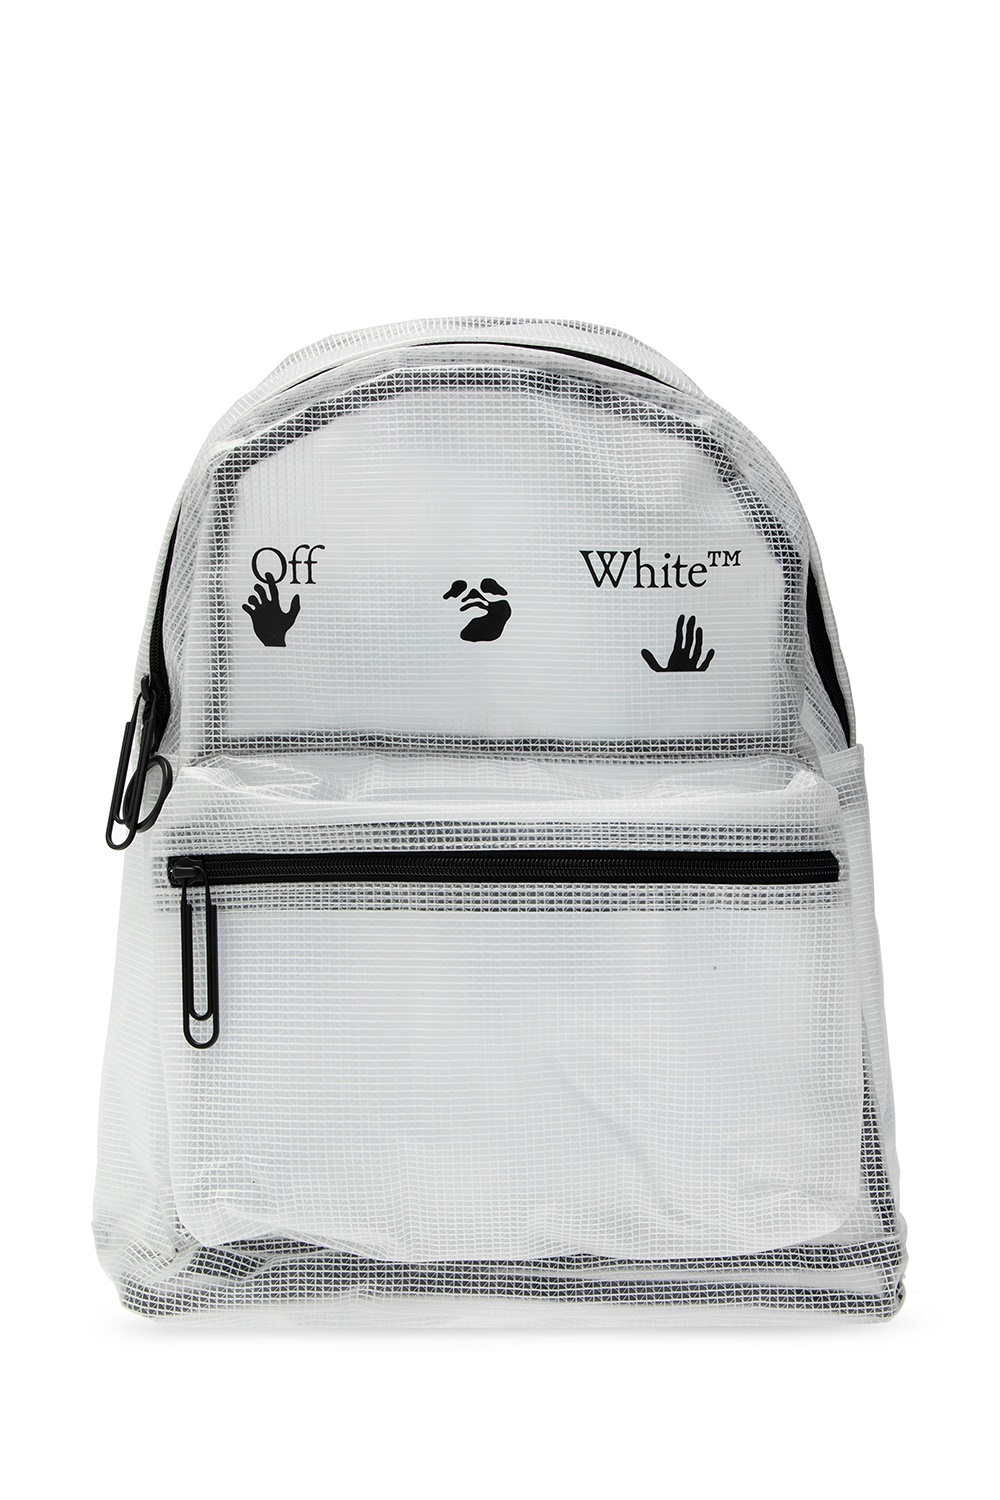 White Logo backpack, Off